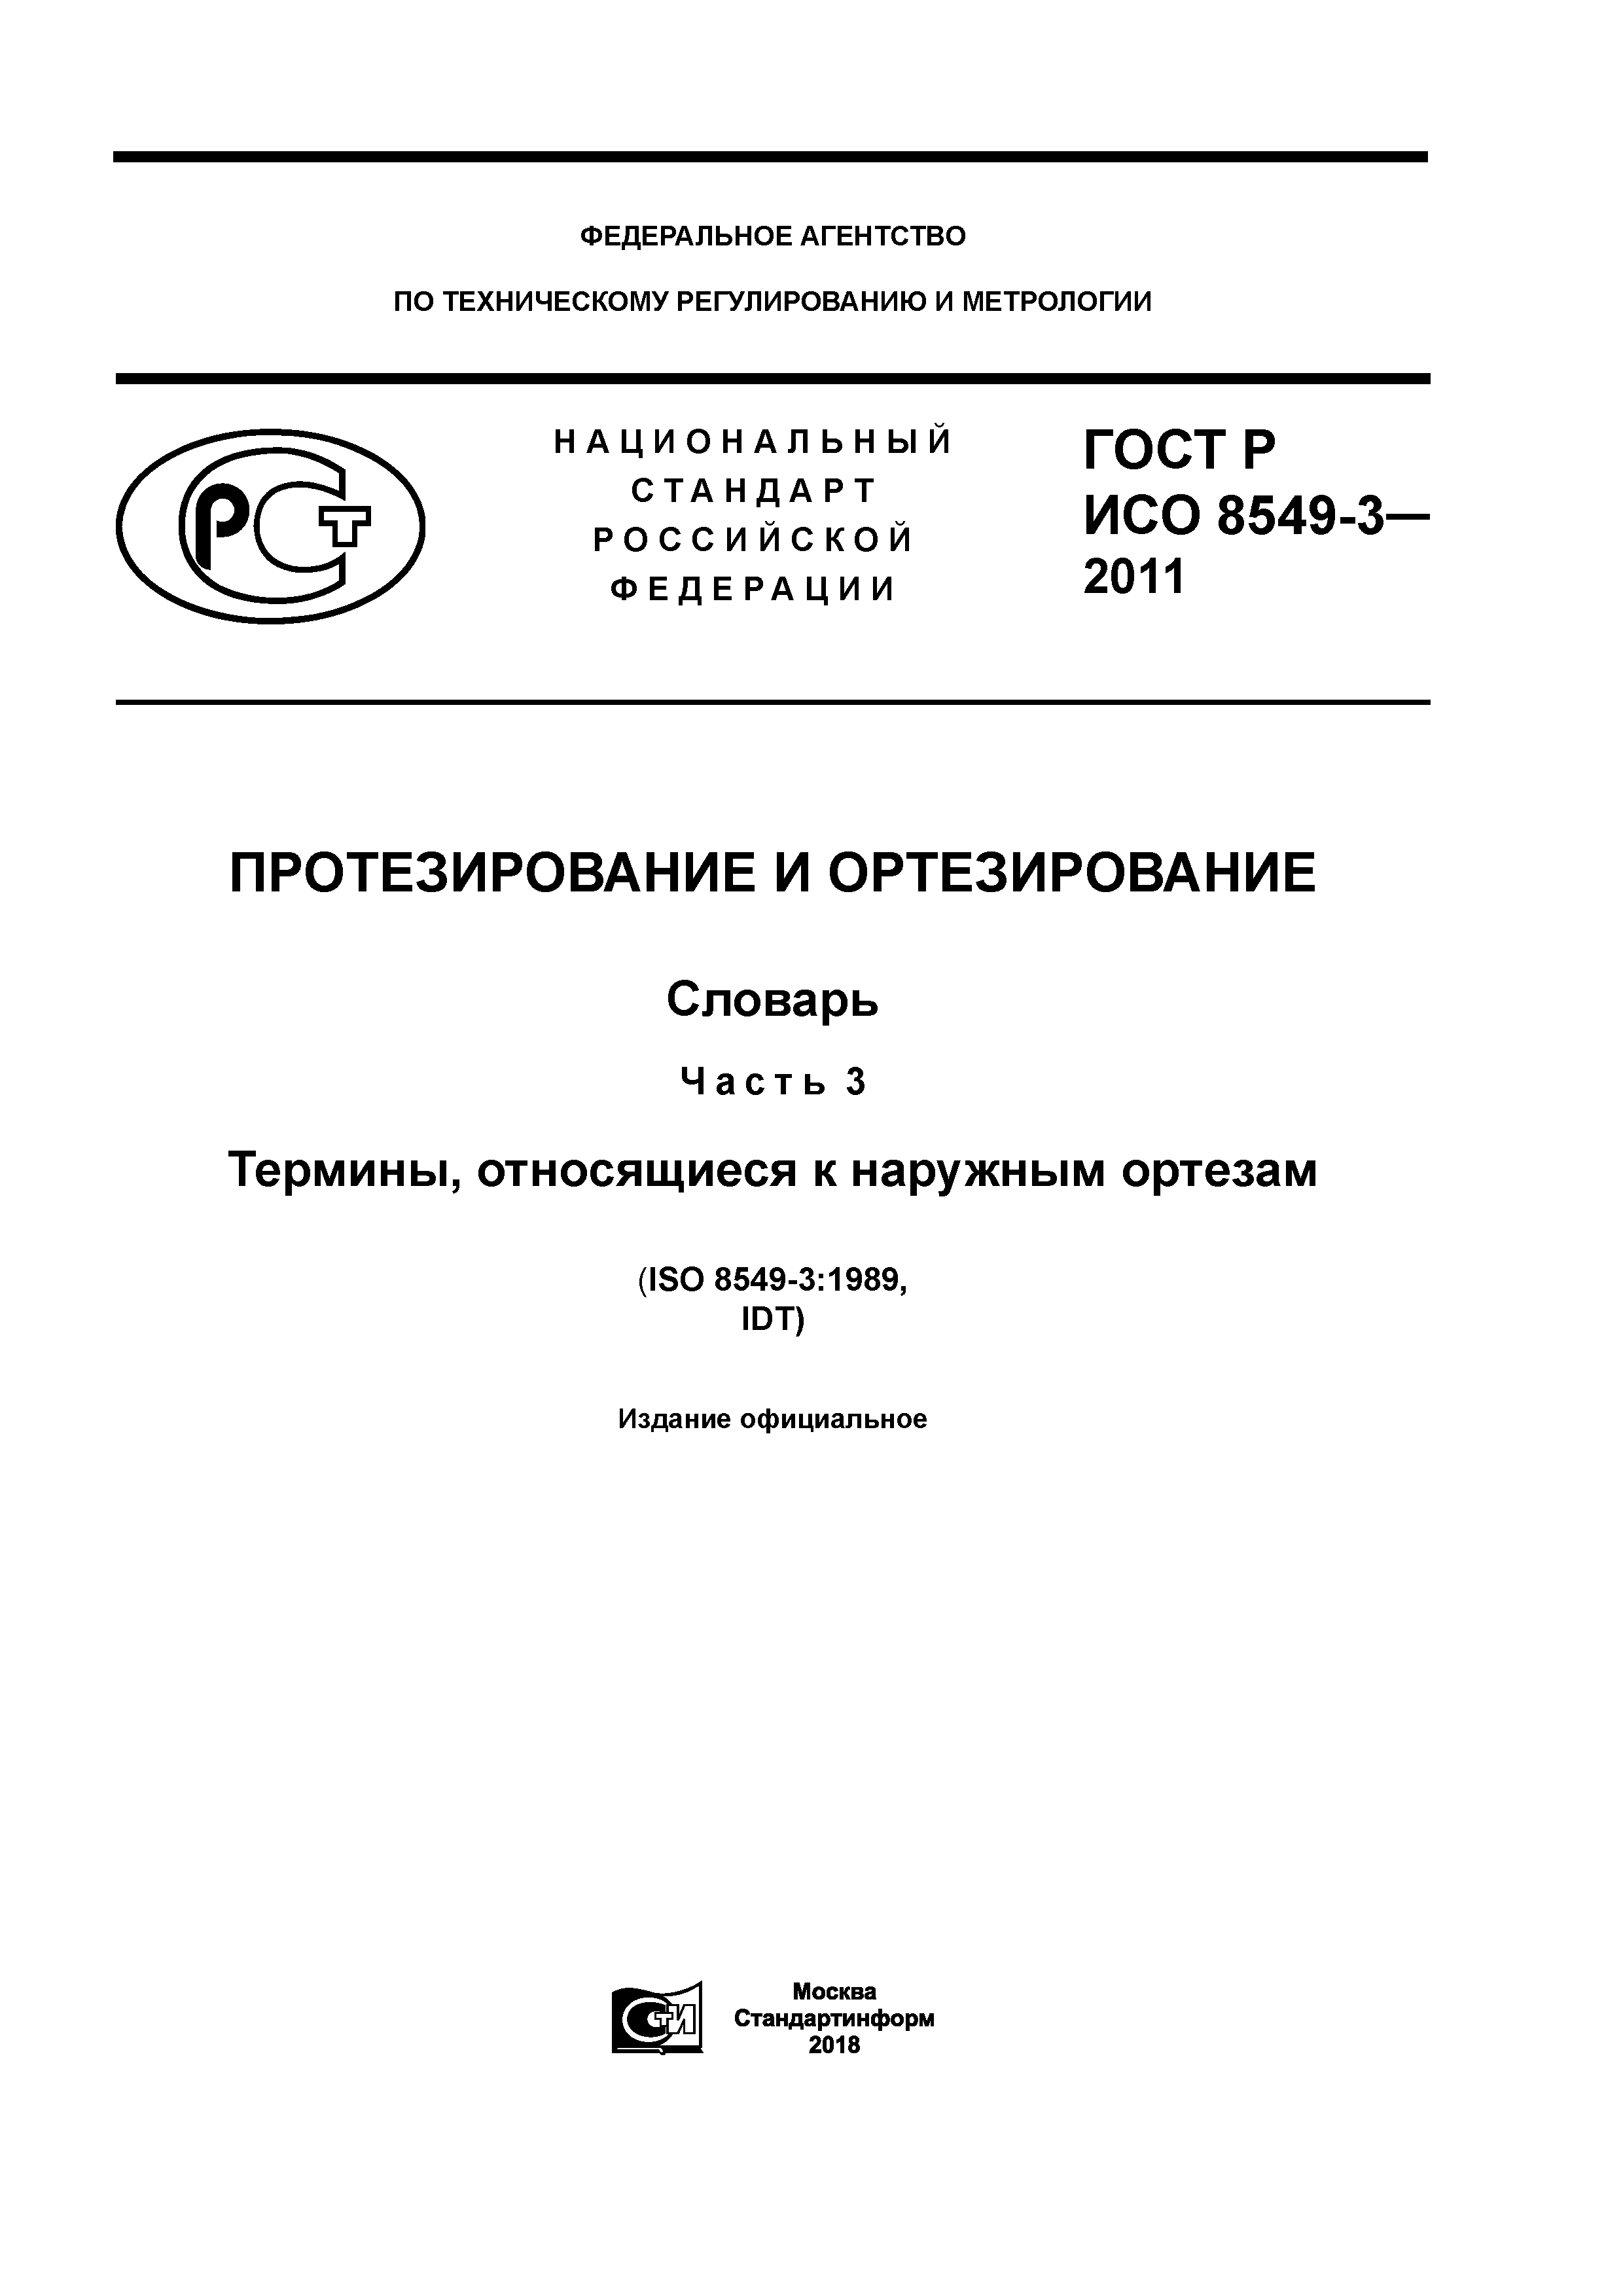 ГОСТ Р ИСО 8549-3-2011